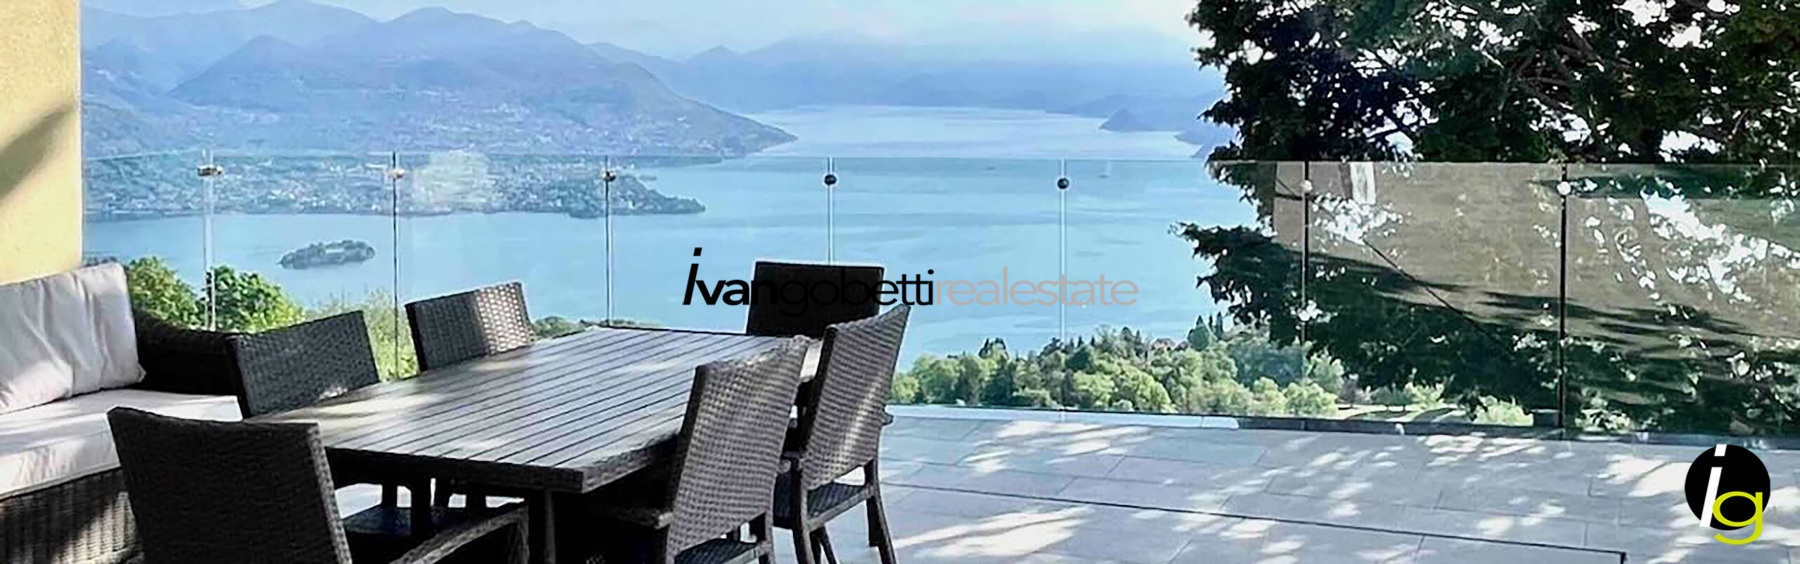 Lussuosa villa moderna con magnifica vista lago e piscina sulle colline di Stresa Lago Maggiore<br/><span>Codice prodotto: 160123